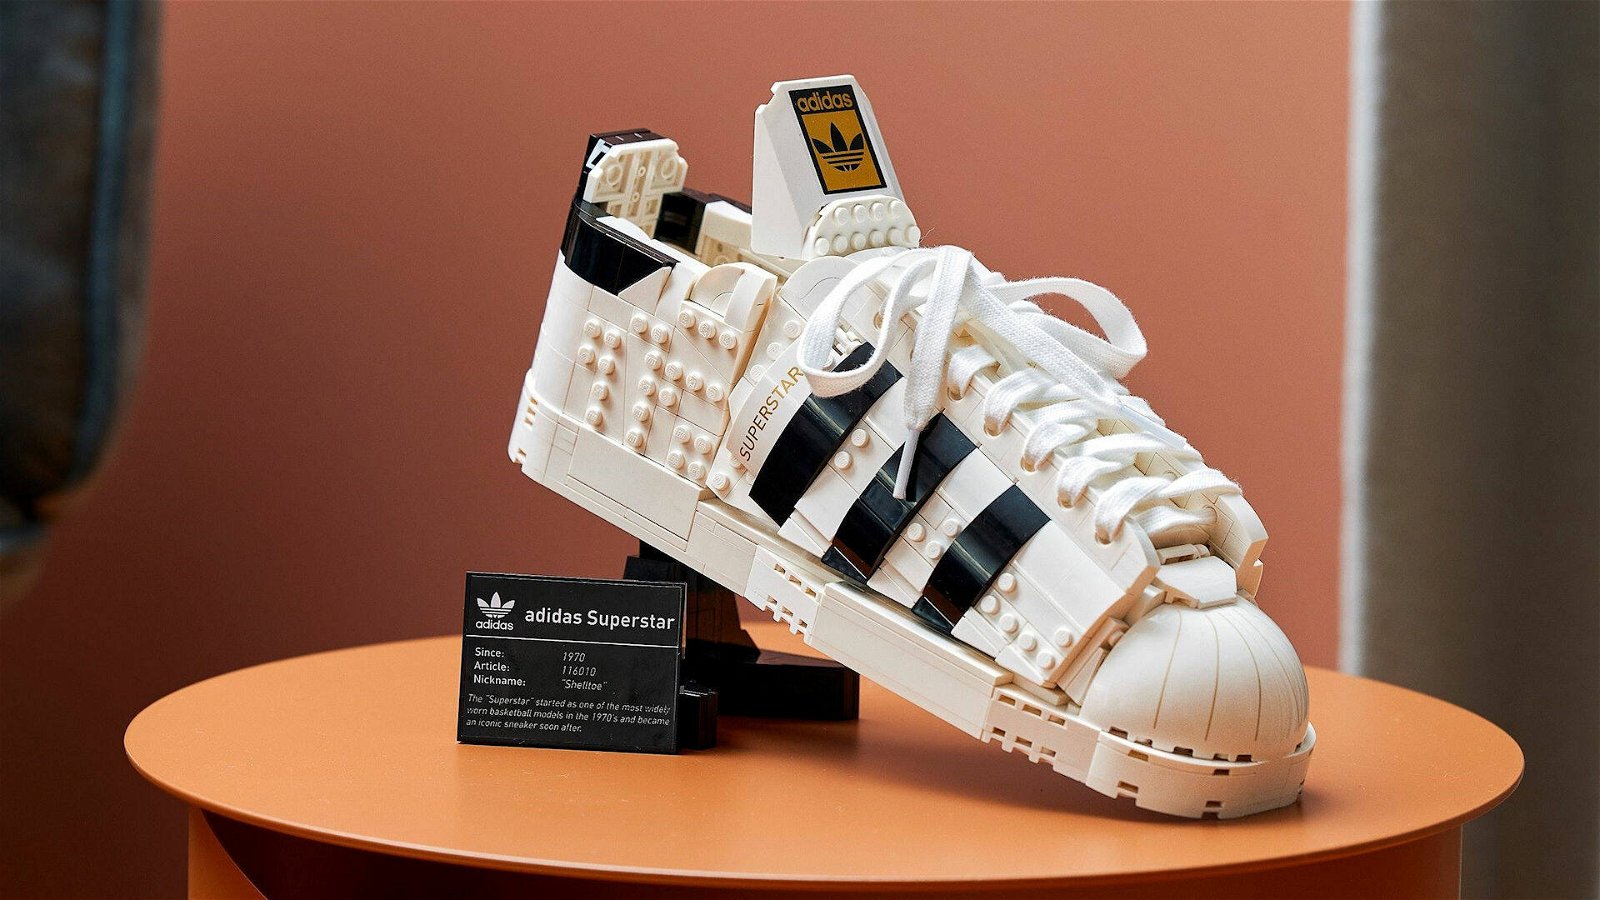 Immagine di LEGO e Adidas: in arrivo il set della sneaker Superstar